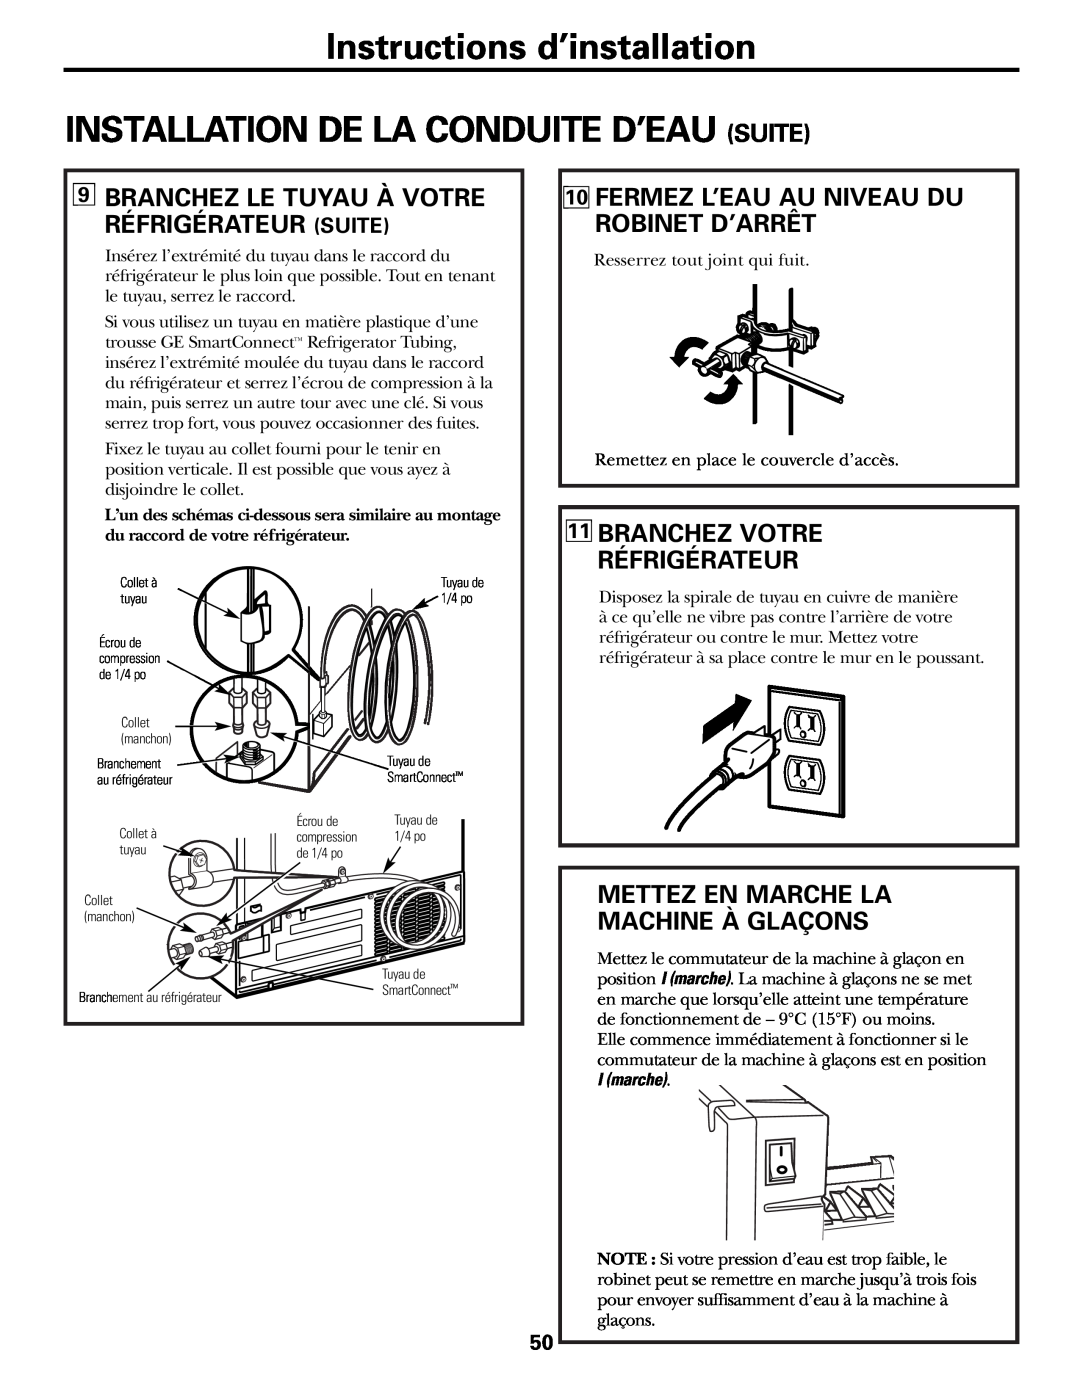 GE 197D3351P003 installation instructions Fermez L’Eau Au Niveau Du Robinet D’Arrêt, Branchez Votre Réfrigérateur 